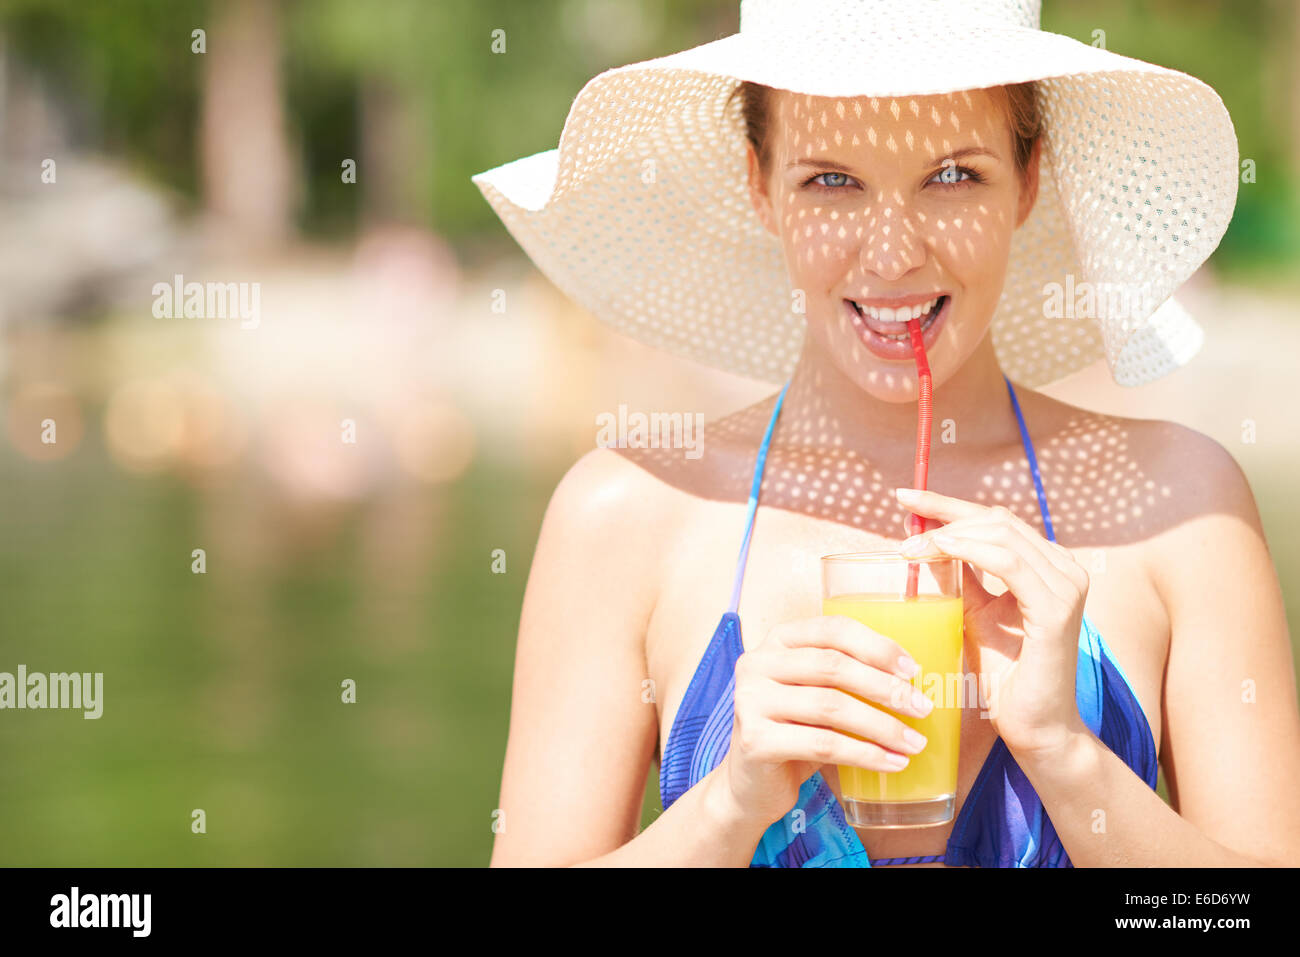 Woman in bikini drinking orange juice Stock Photo